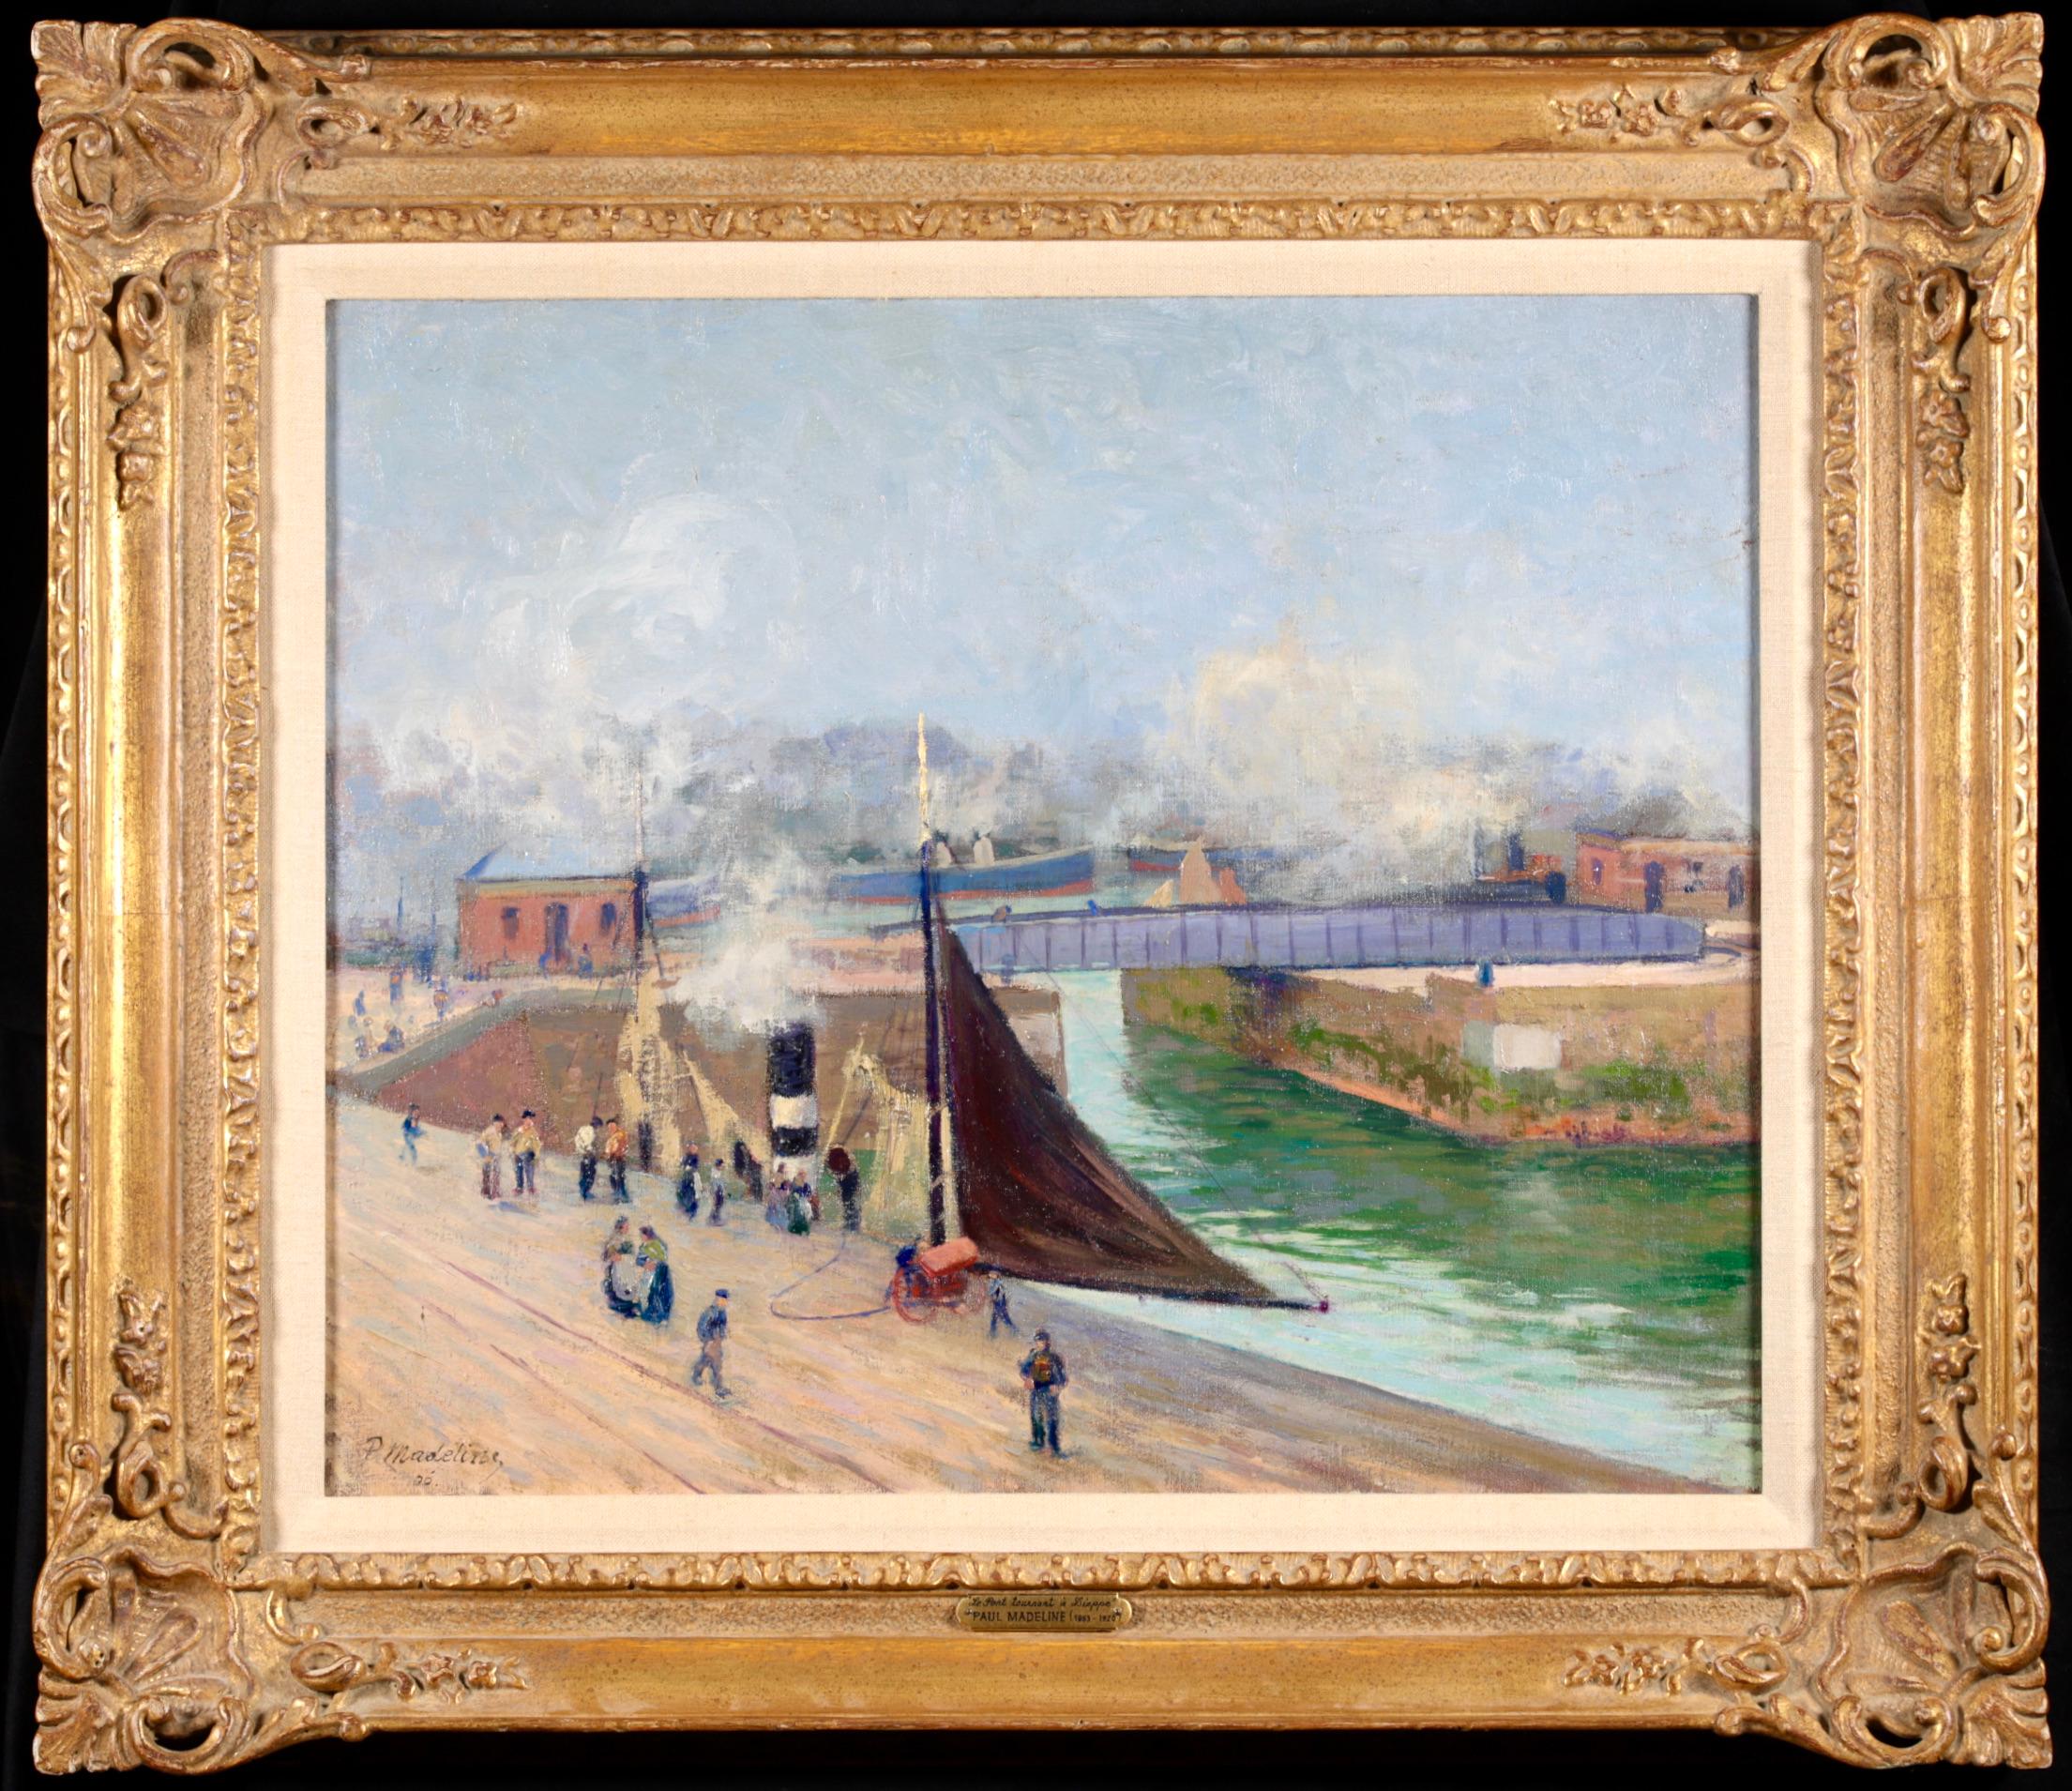 Signiert und datiert Öl auf Leinwand Landschaft von Französisch Post impressionistischen Maler Paul Madeline. Dieses schöne Werk zeigt die Tournant-Brücke über den Fluss Arques im Seehafen von Dieppe, Frankreich. Arbeiter spazieren durch den Hafen,